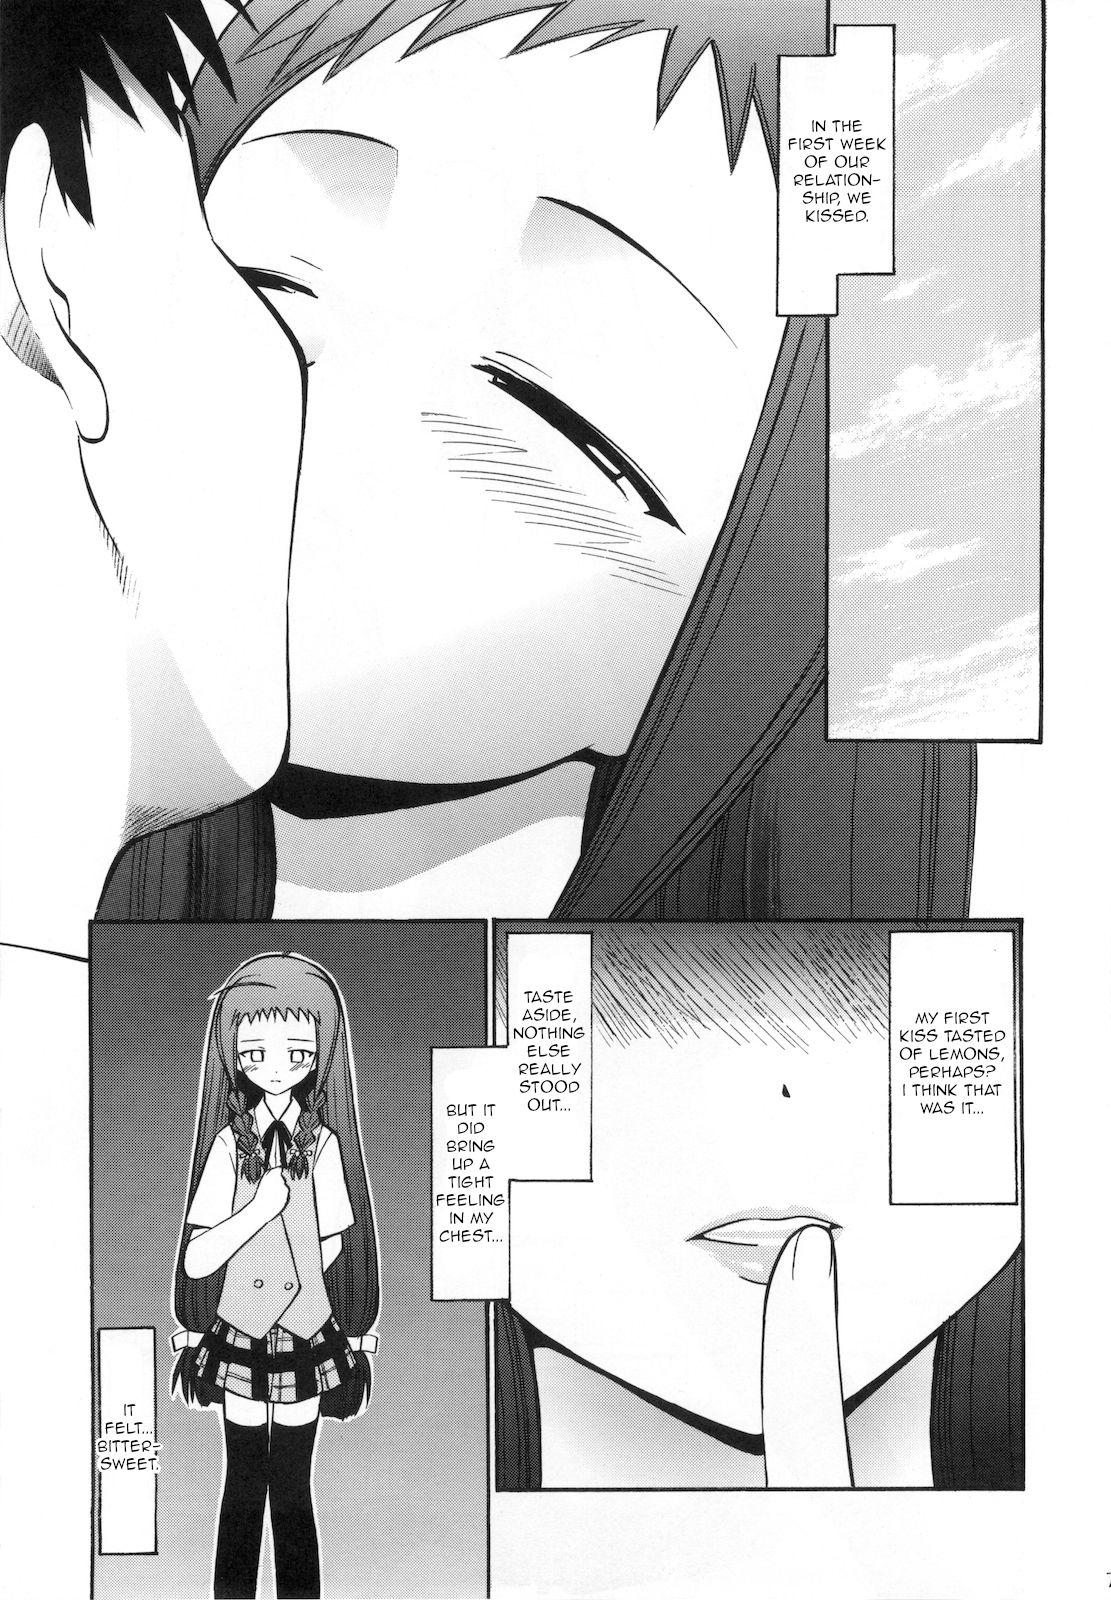 Hot Women Fucking Yue no Koisuru Heart - Mahou sensei negima Sucking Cocks - Page 6